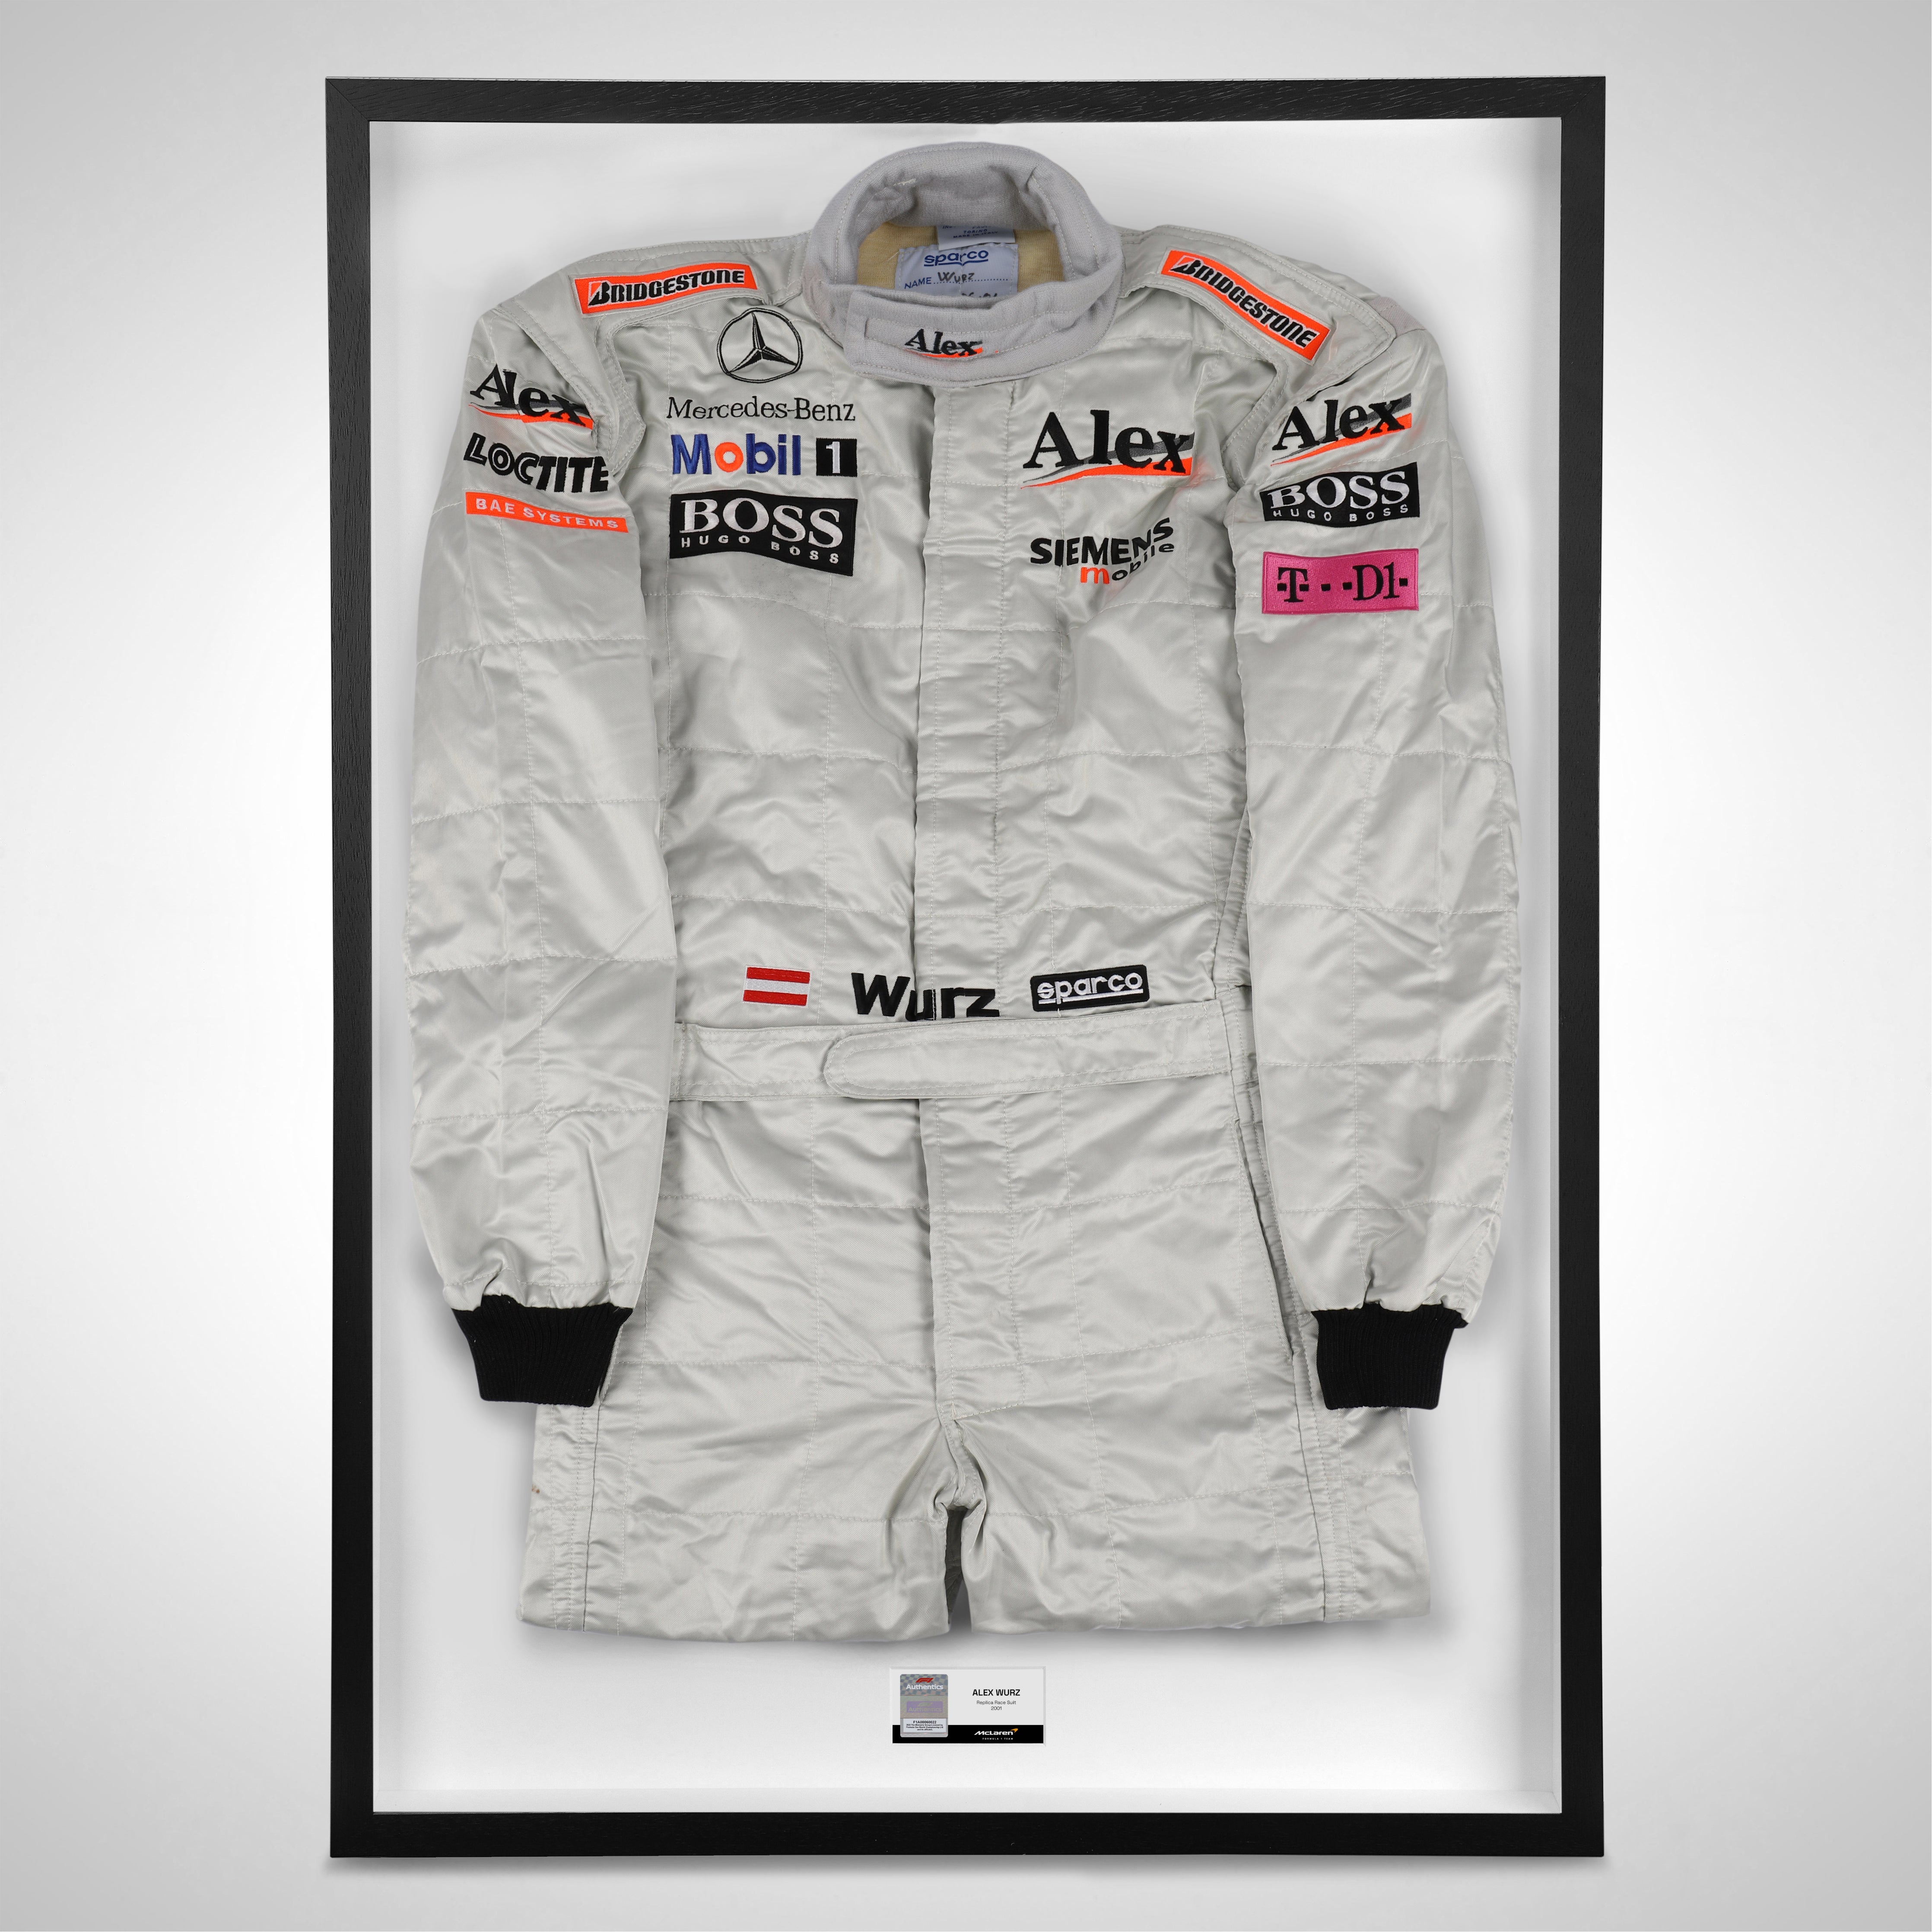 Alexander Wurz 2001 Replica McLaren F1 Team Race Suit with Boss, Siemans & Alex Branding